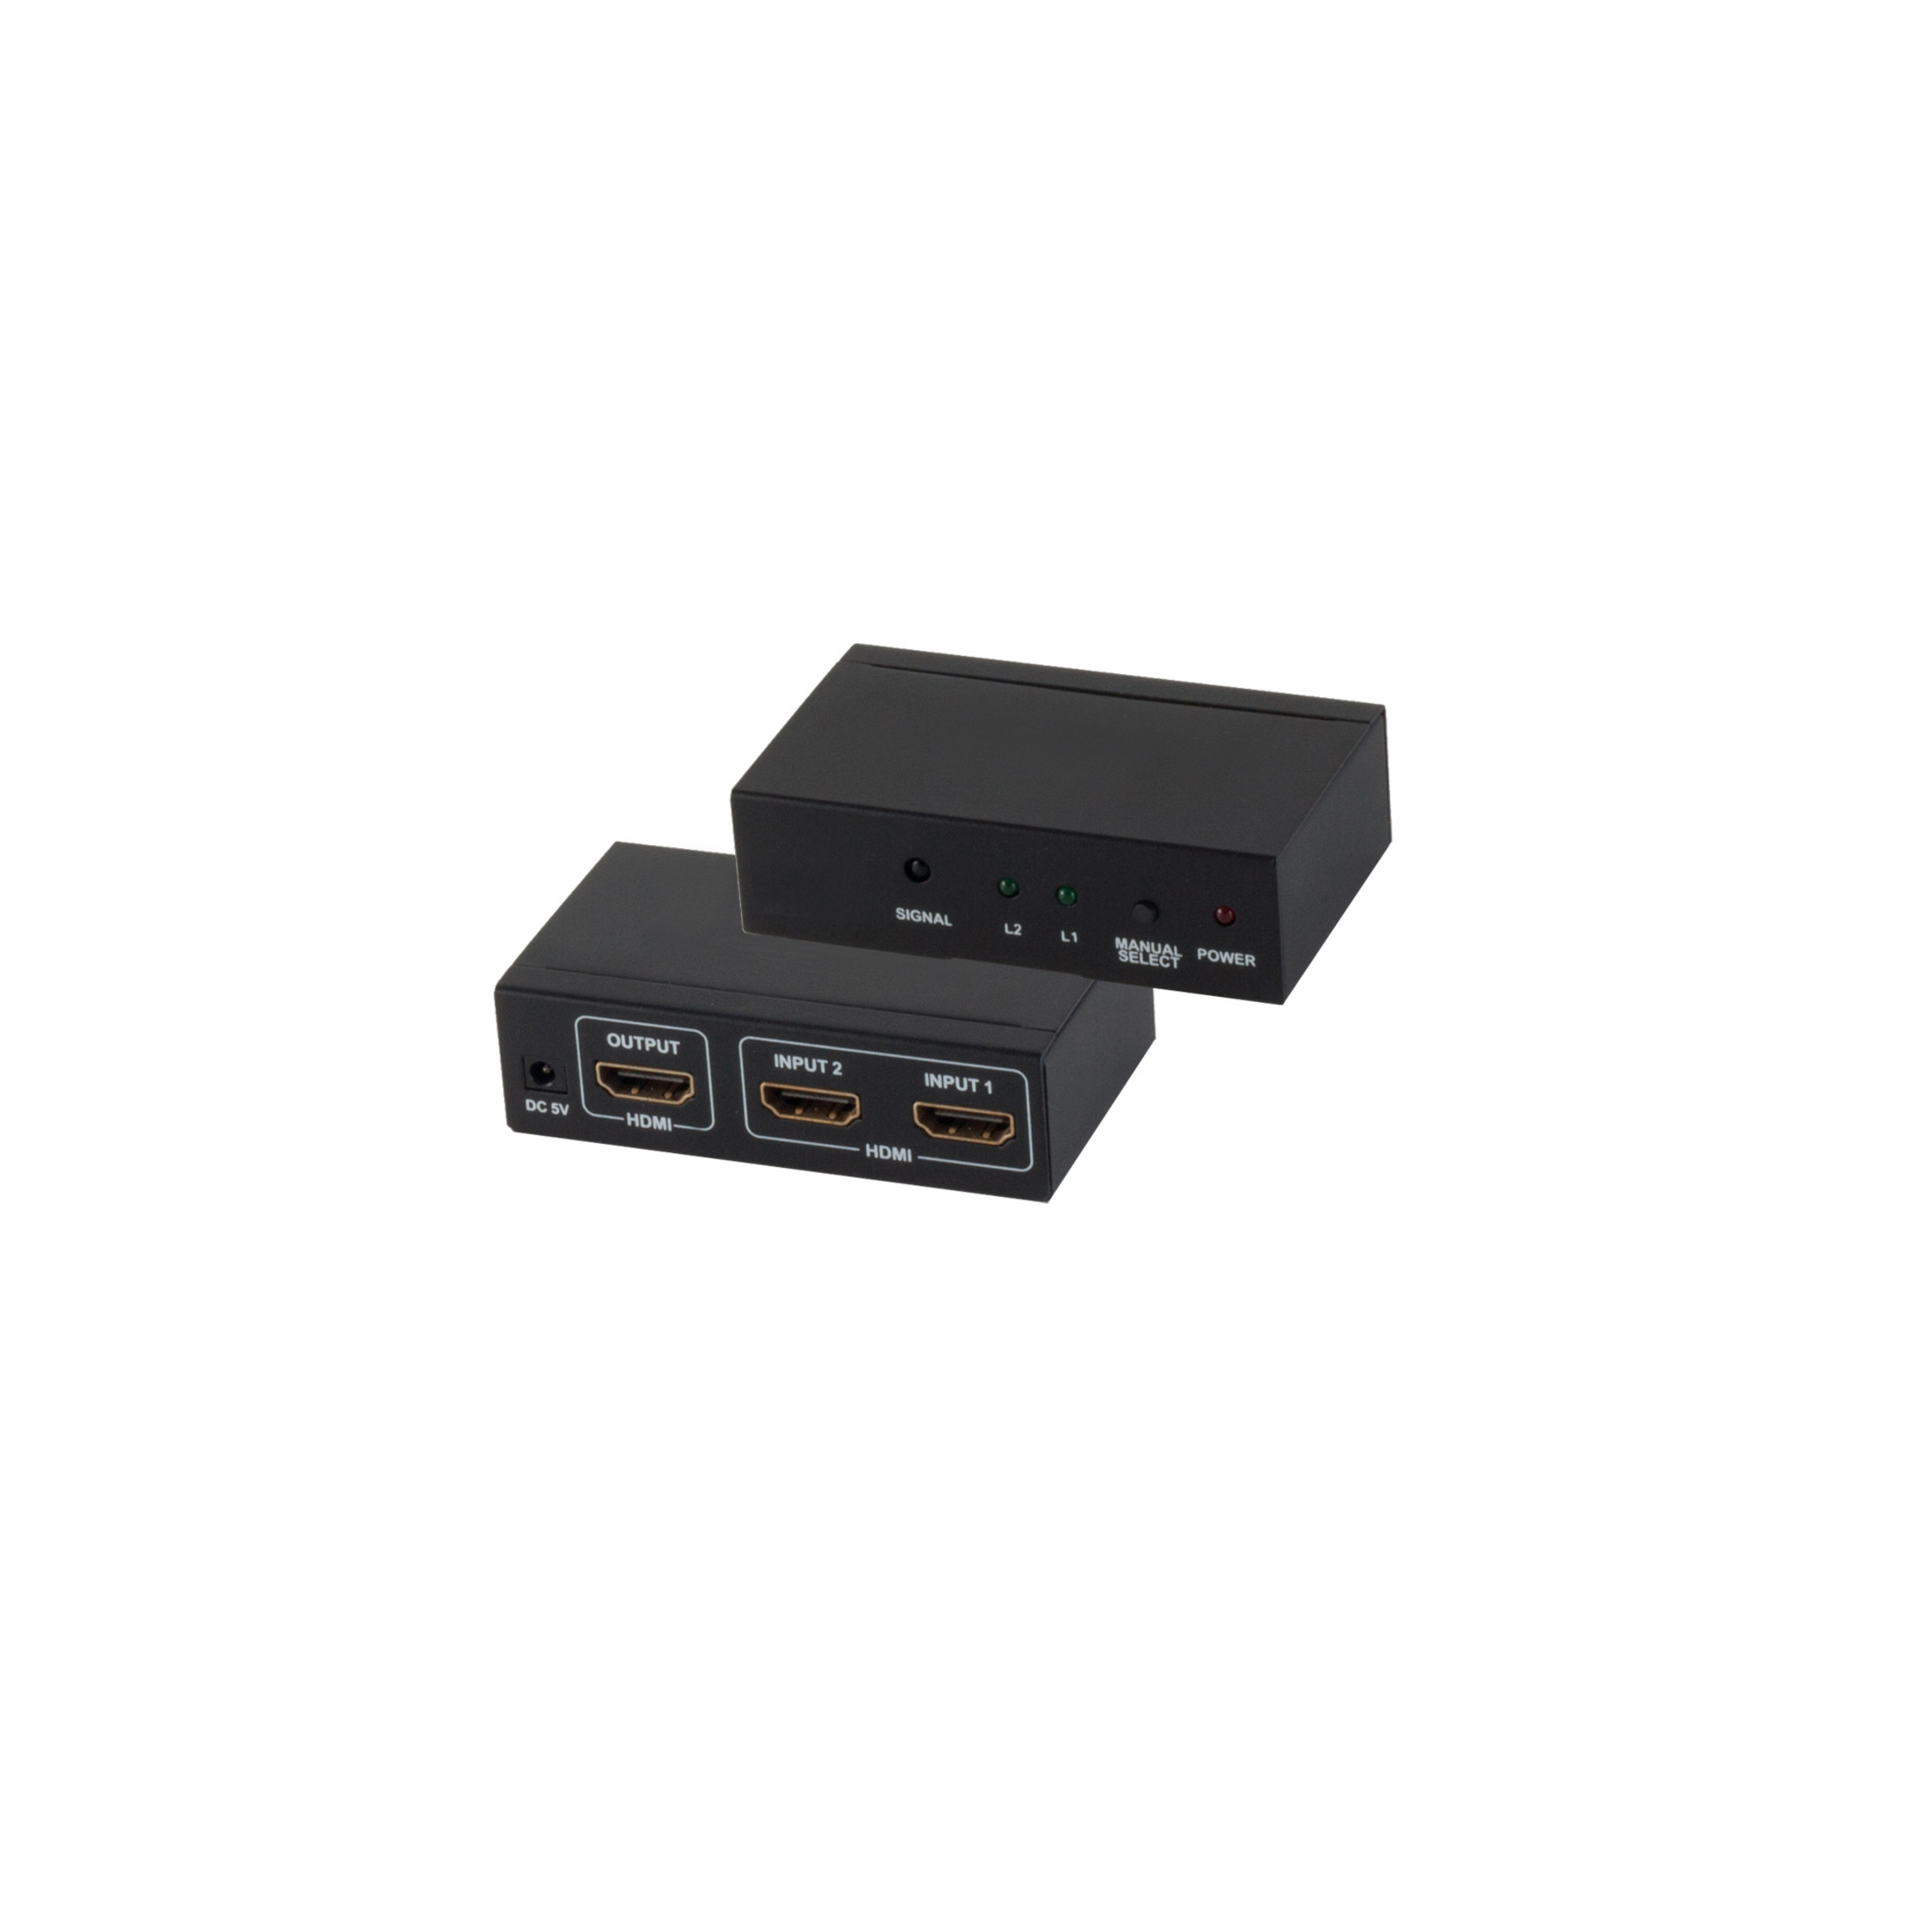 OUT, Umschalter MAXIMUM Verteiler VER1.4 HDMI & 4K2K, CONNECTIVITY S/CONN Switch, IN 3D, 1x 2x